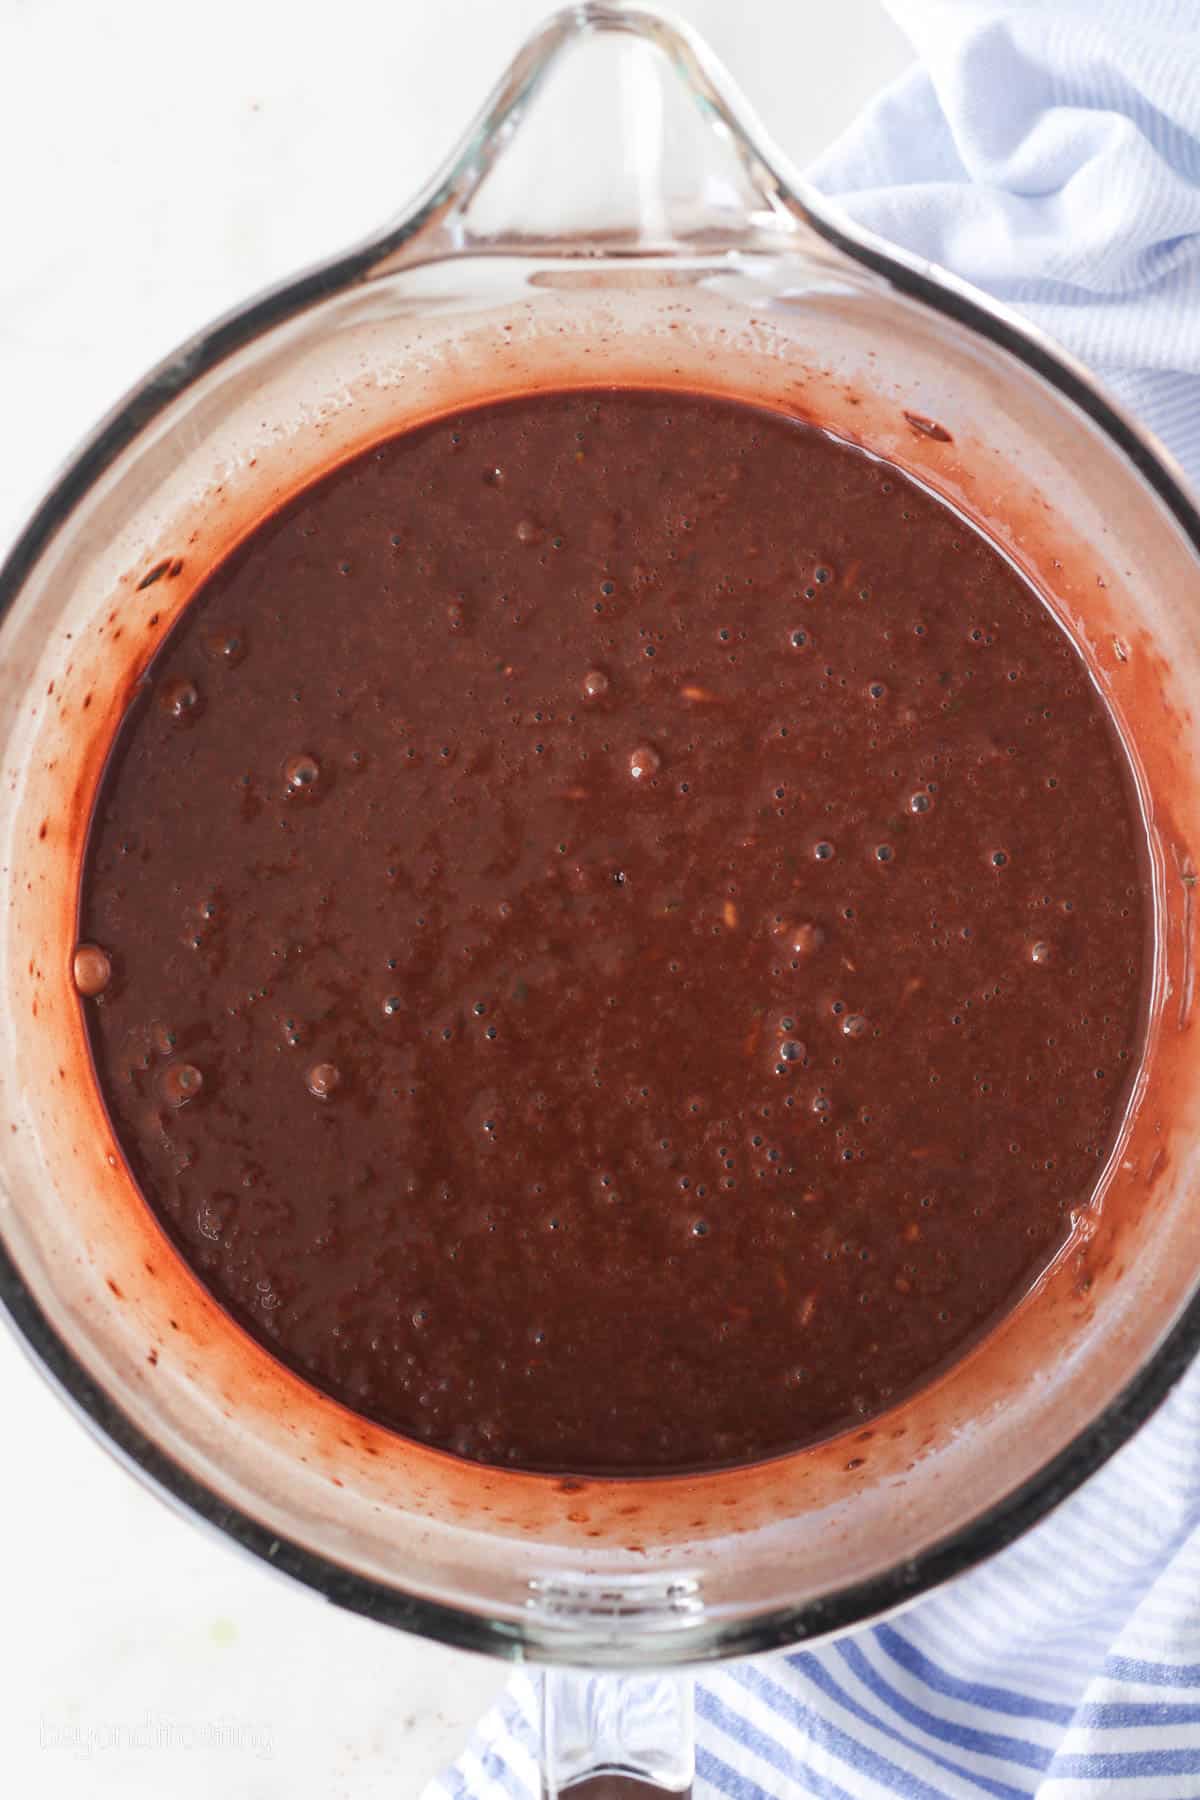 Chocolate zucchini cake batter in a bowl.